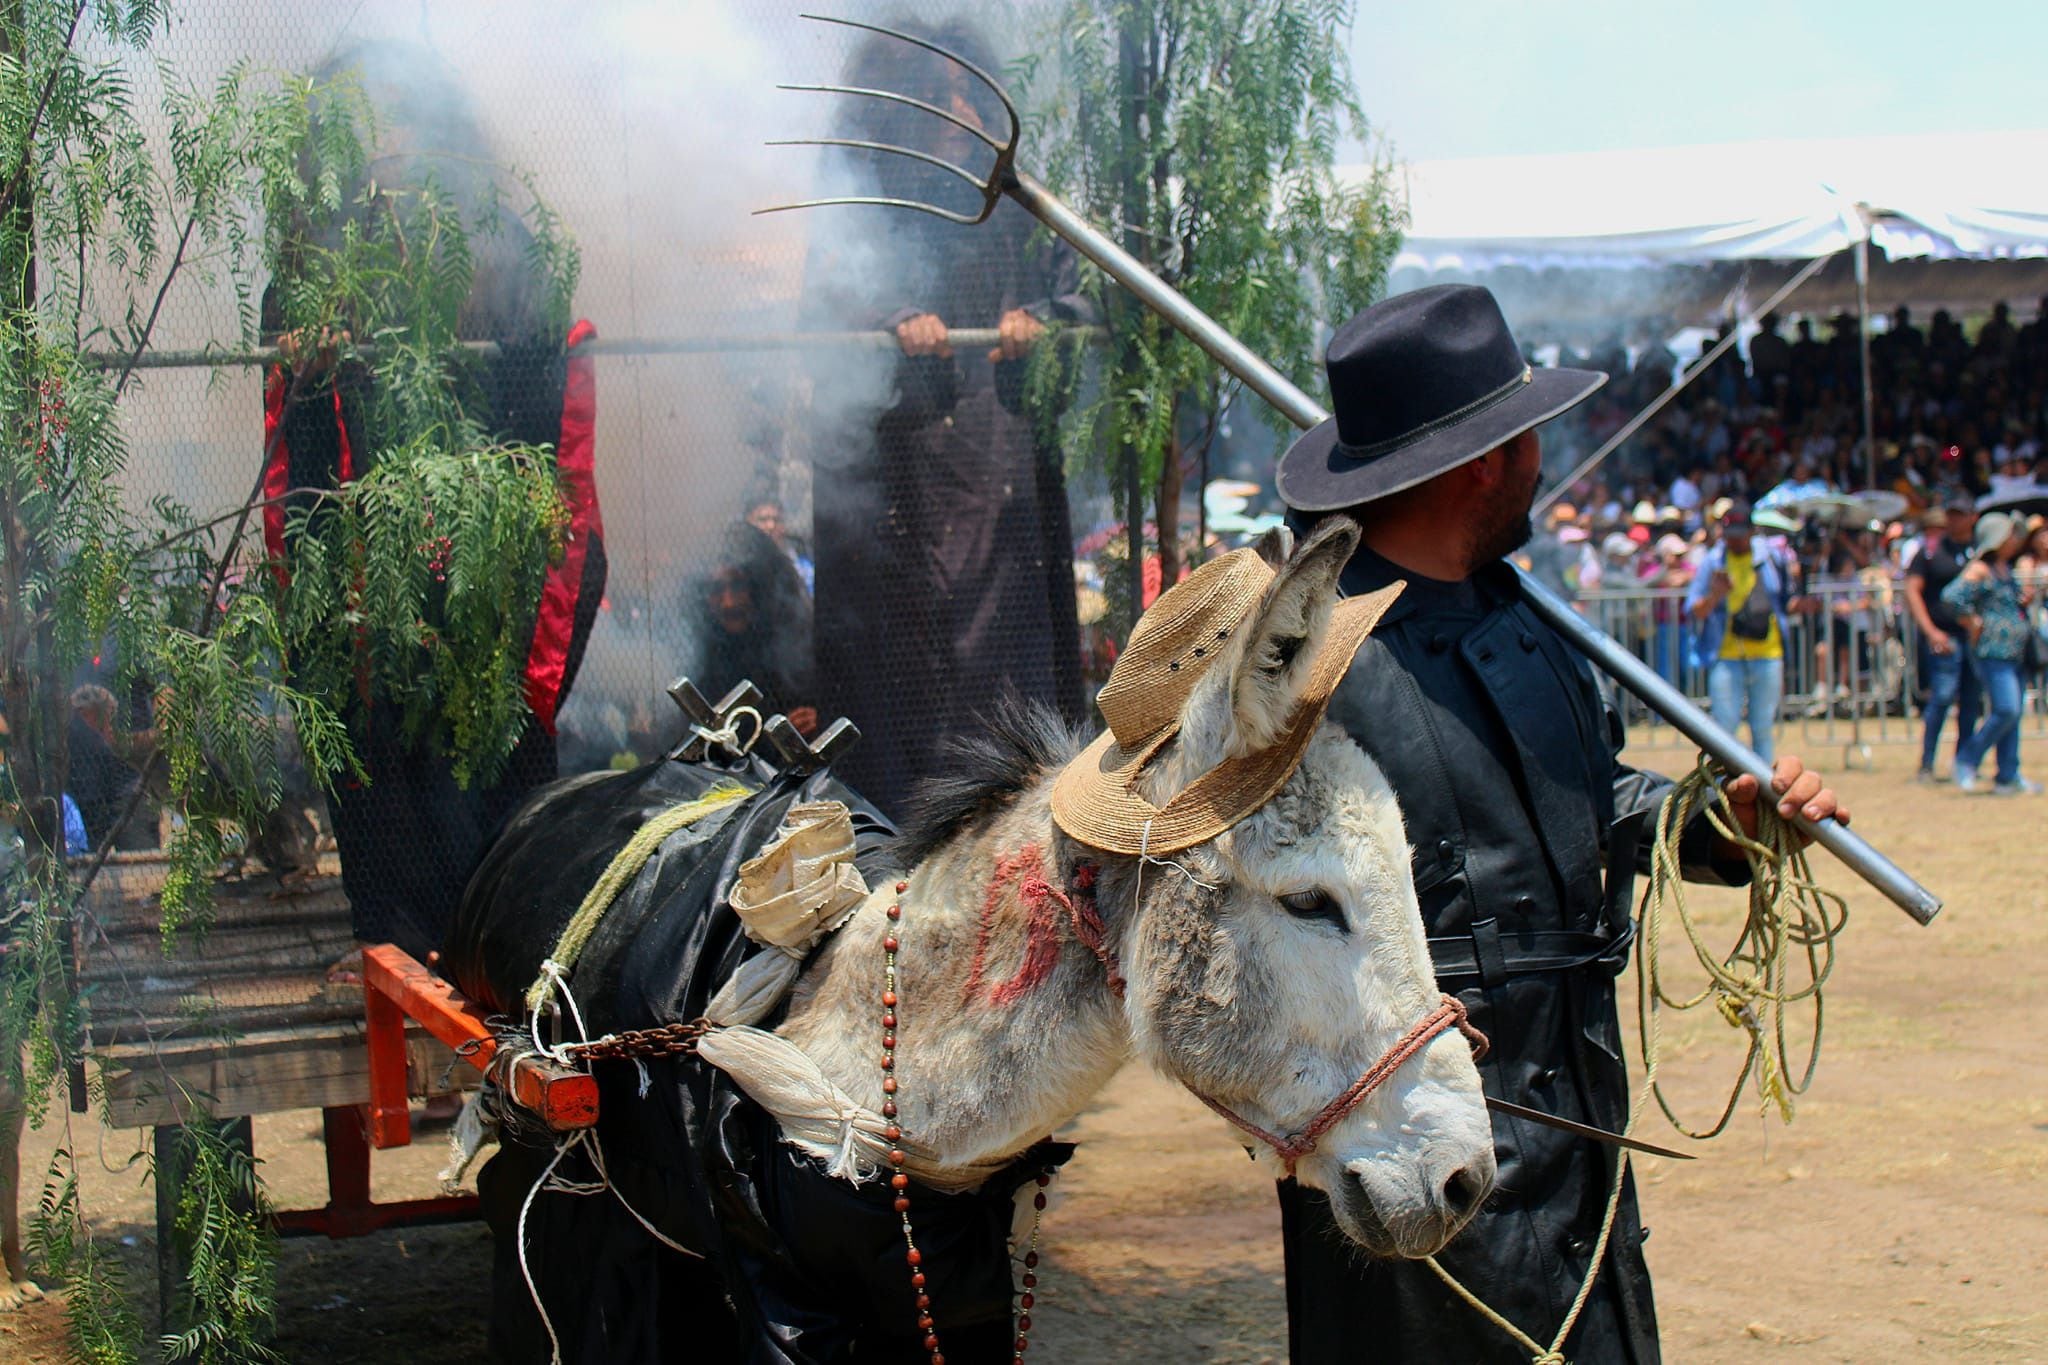 14 burros participaron en el concurso de disfraces; uno de los finalistas fue el "cazador de brujas". (Facebook/Feria Nacional del Burro Otumba 2024)

Burros, equinos, feria nacional del burro 2024, Otumba, México, disfraces, polo, animales, mascotas